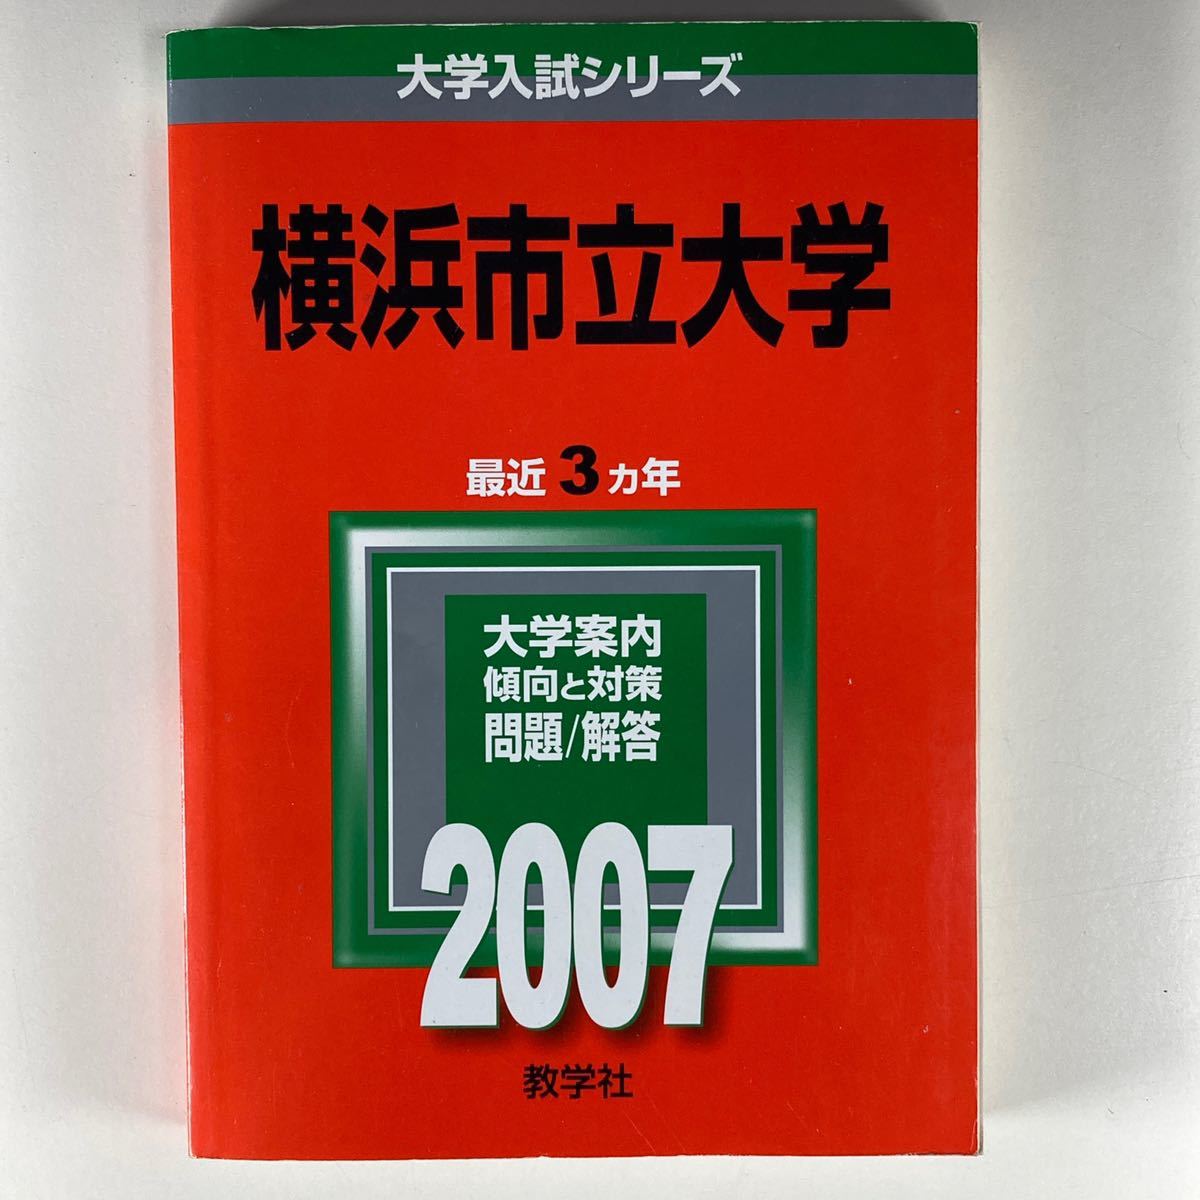 【2007年】横浜市立大学 赤本 最近3ヵ年 教学社 大学入試シリーズ_画像1